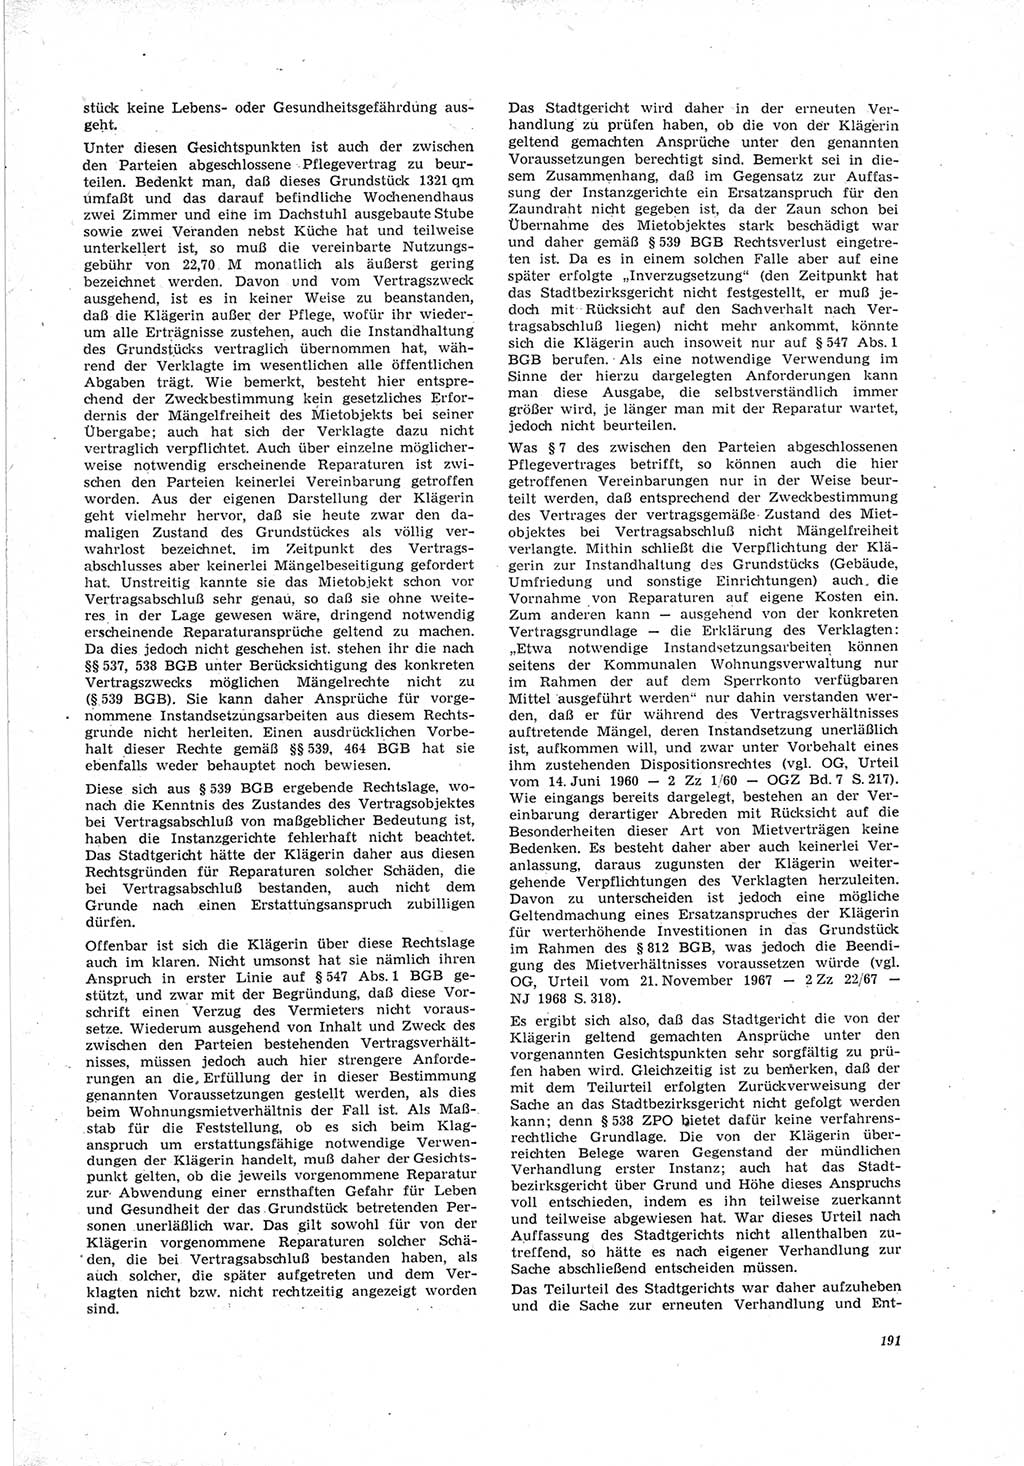 Neue Justiz (NJ), Zeitschrift für Recht und Rechtswissenschaft [Deutsche Demokratische Republik (DDR)], 23. Jahrgang 1969, Seite 191 (NJ DDR 1969, S. 191)